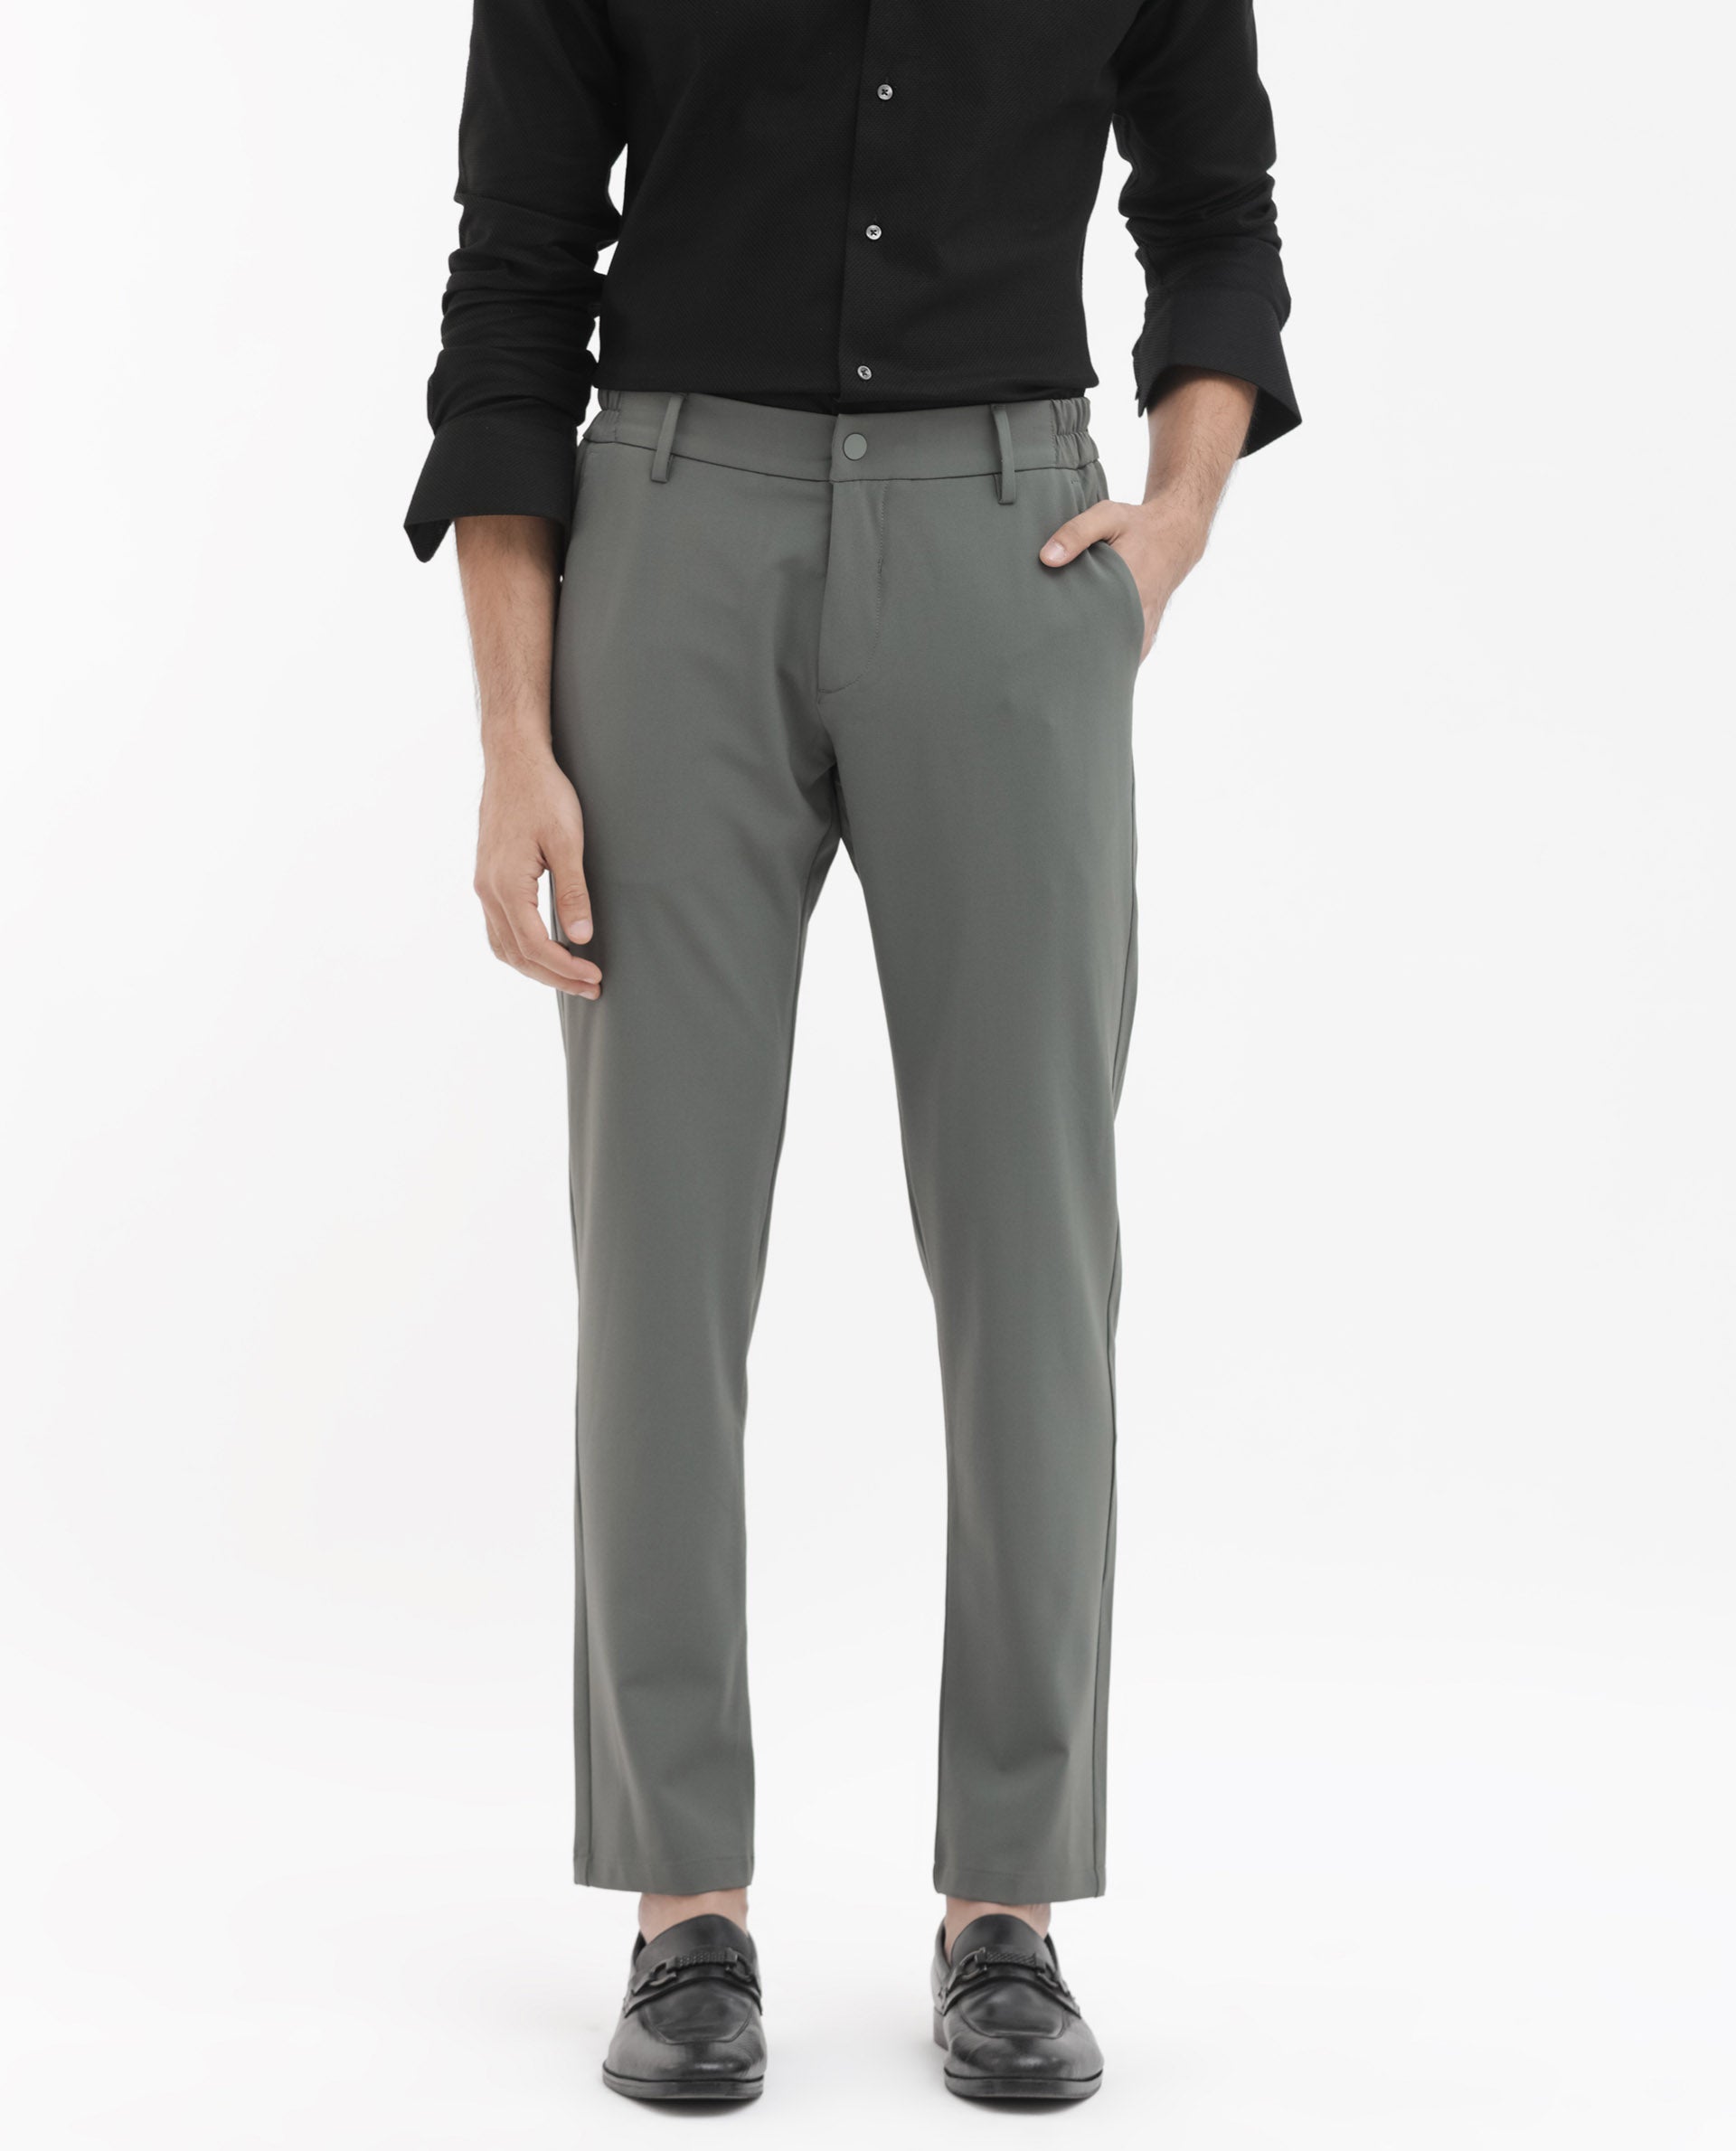 Smarty Pants women's polyester lycra slit bell bottom black formal trouser